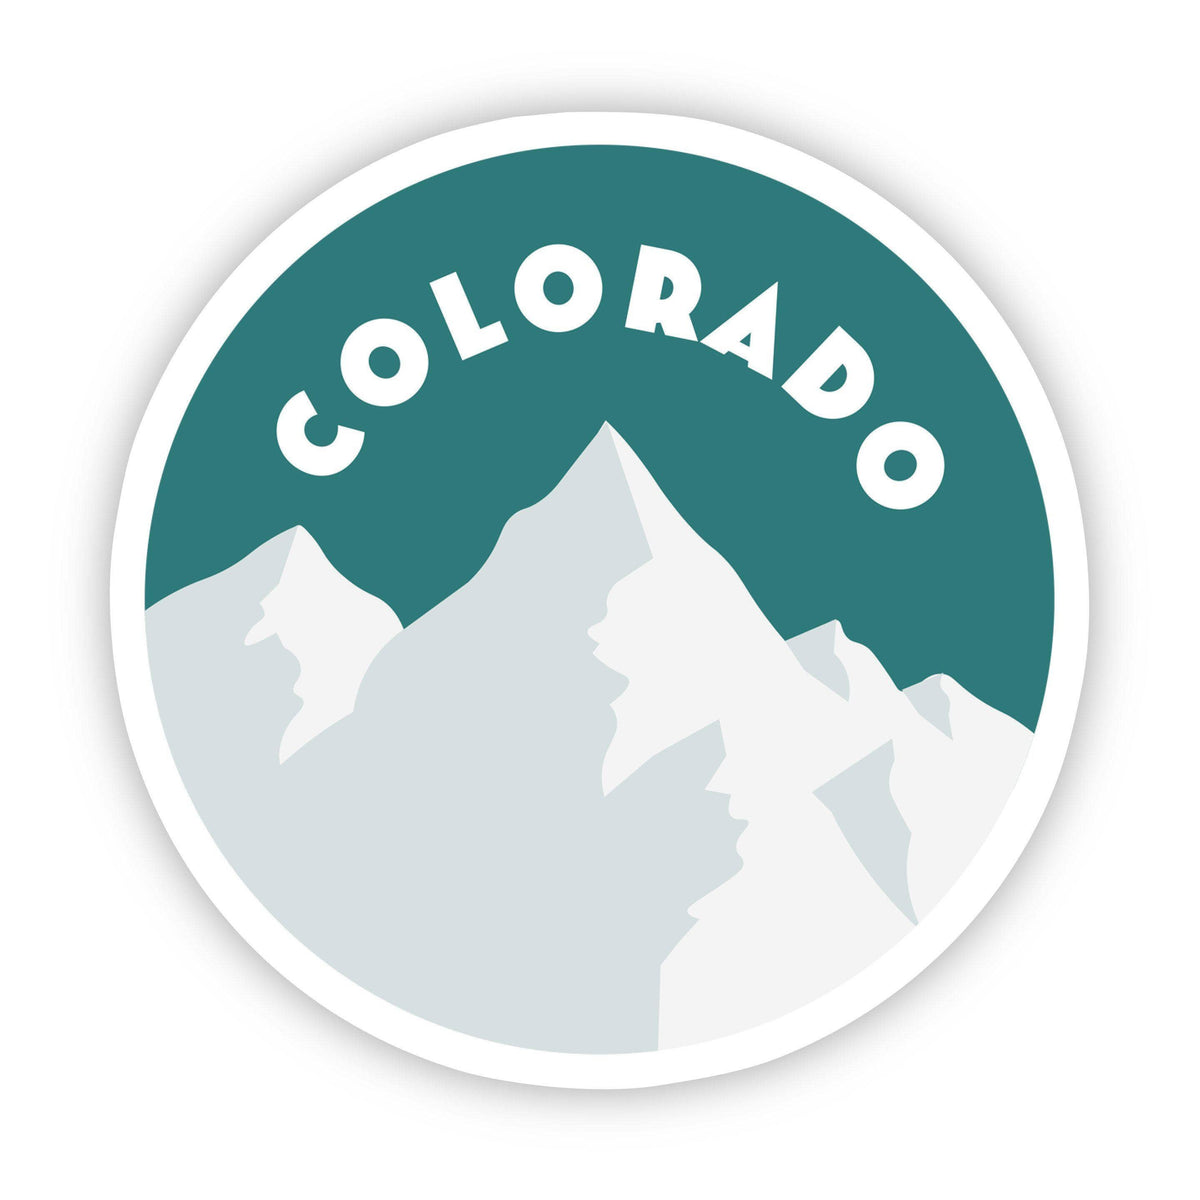 Big Moods - Colorado Mountains Sticker